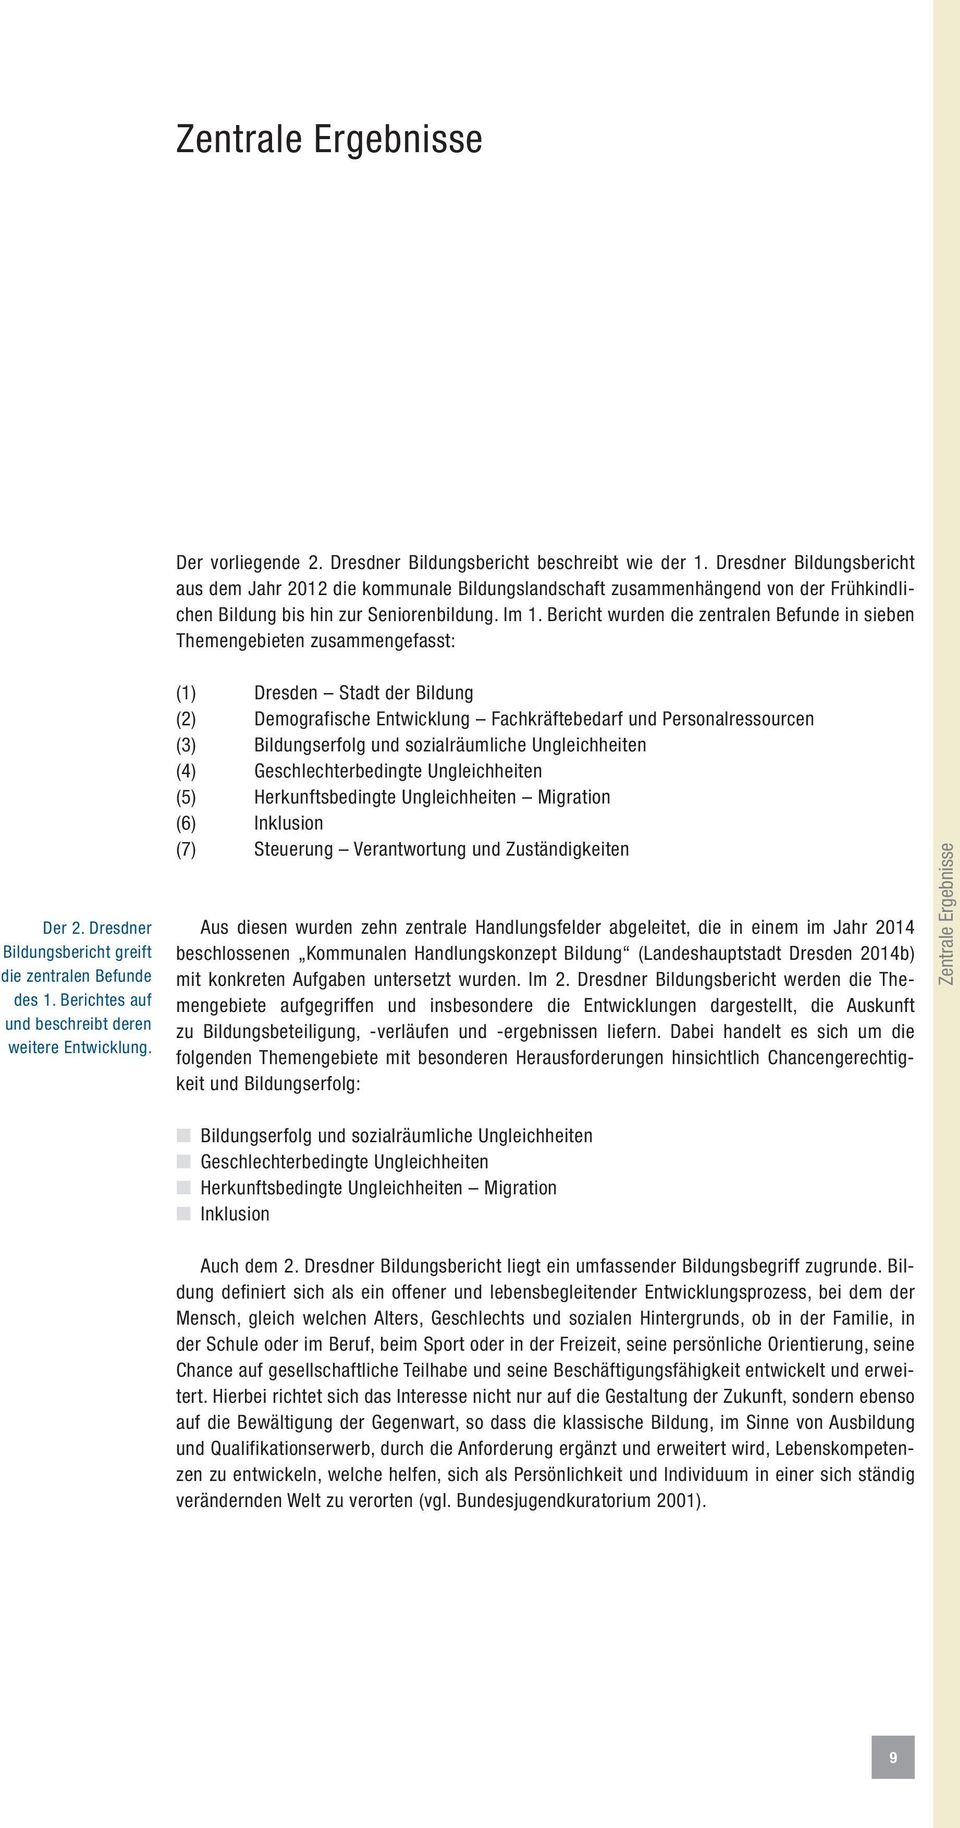 Bericht wurden die zentralen Befunde in sieben Themengebieten zusammengefasst: Der 2. Dresdner Bildungsbericht greift die zentralen Befunde des 1.